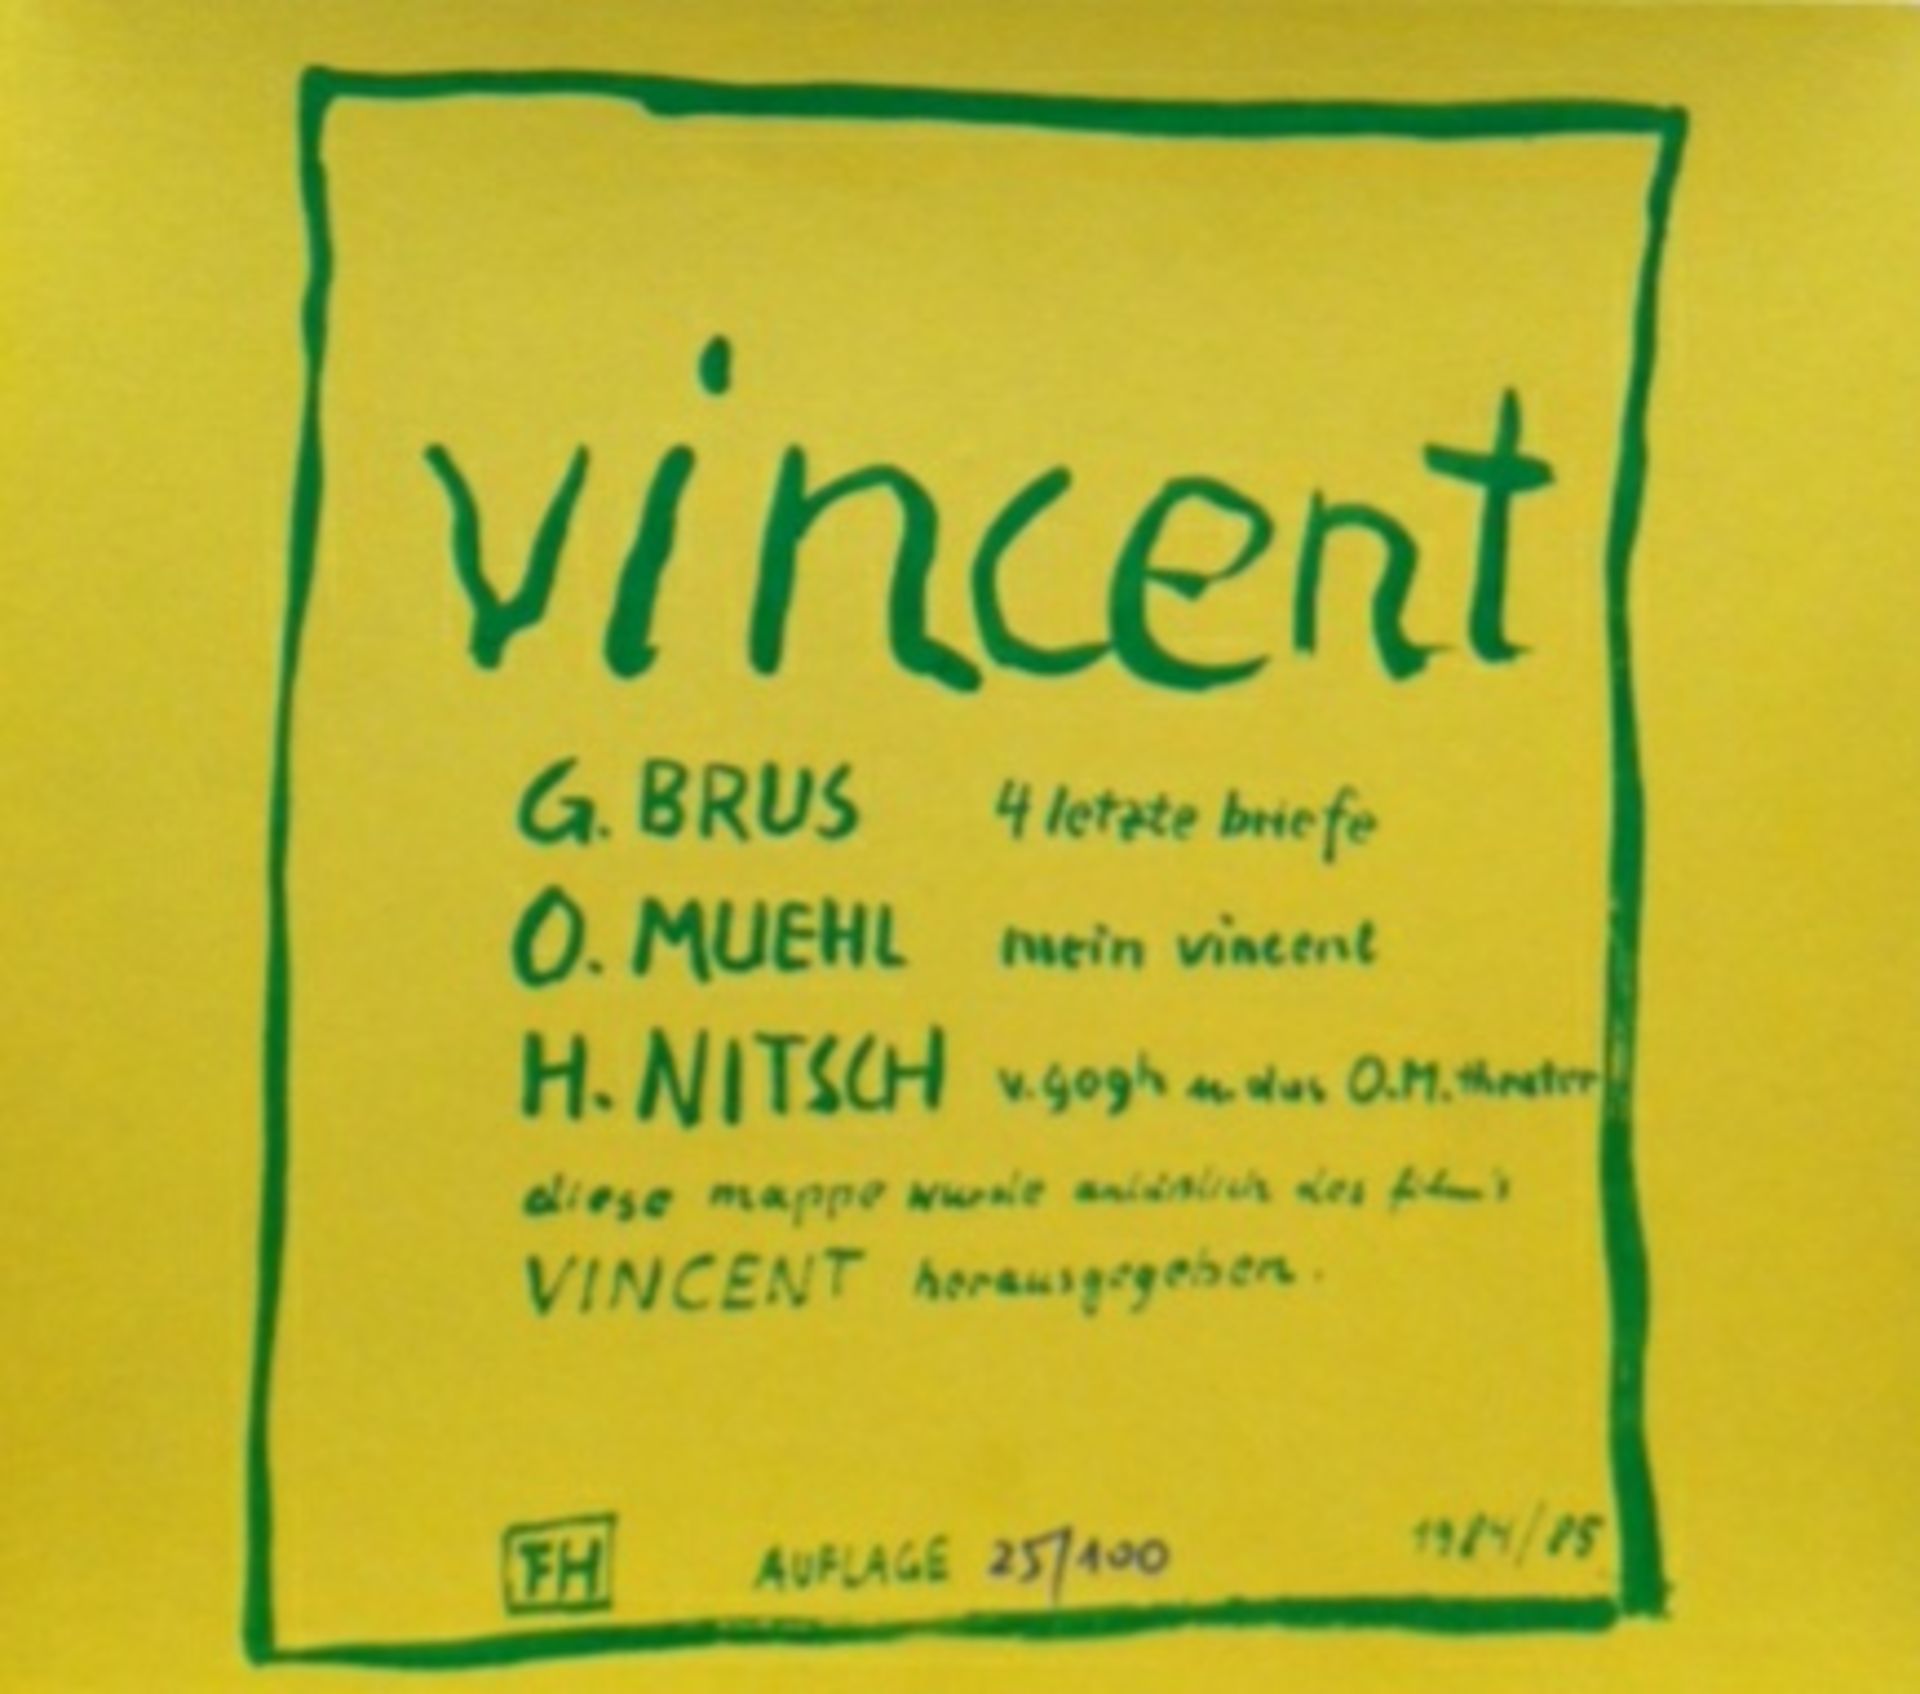 Brus Güntergeb. 19384 letzte Briefe1984/85Lithographie, 5 Blätter aus der Mappe "Vincent" - Signiert - Image 6 of 6